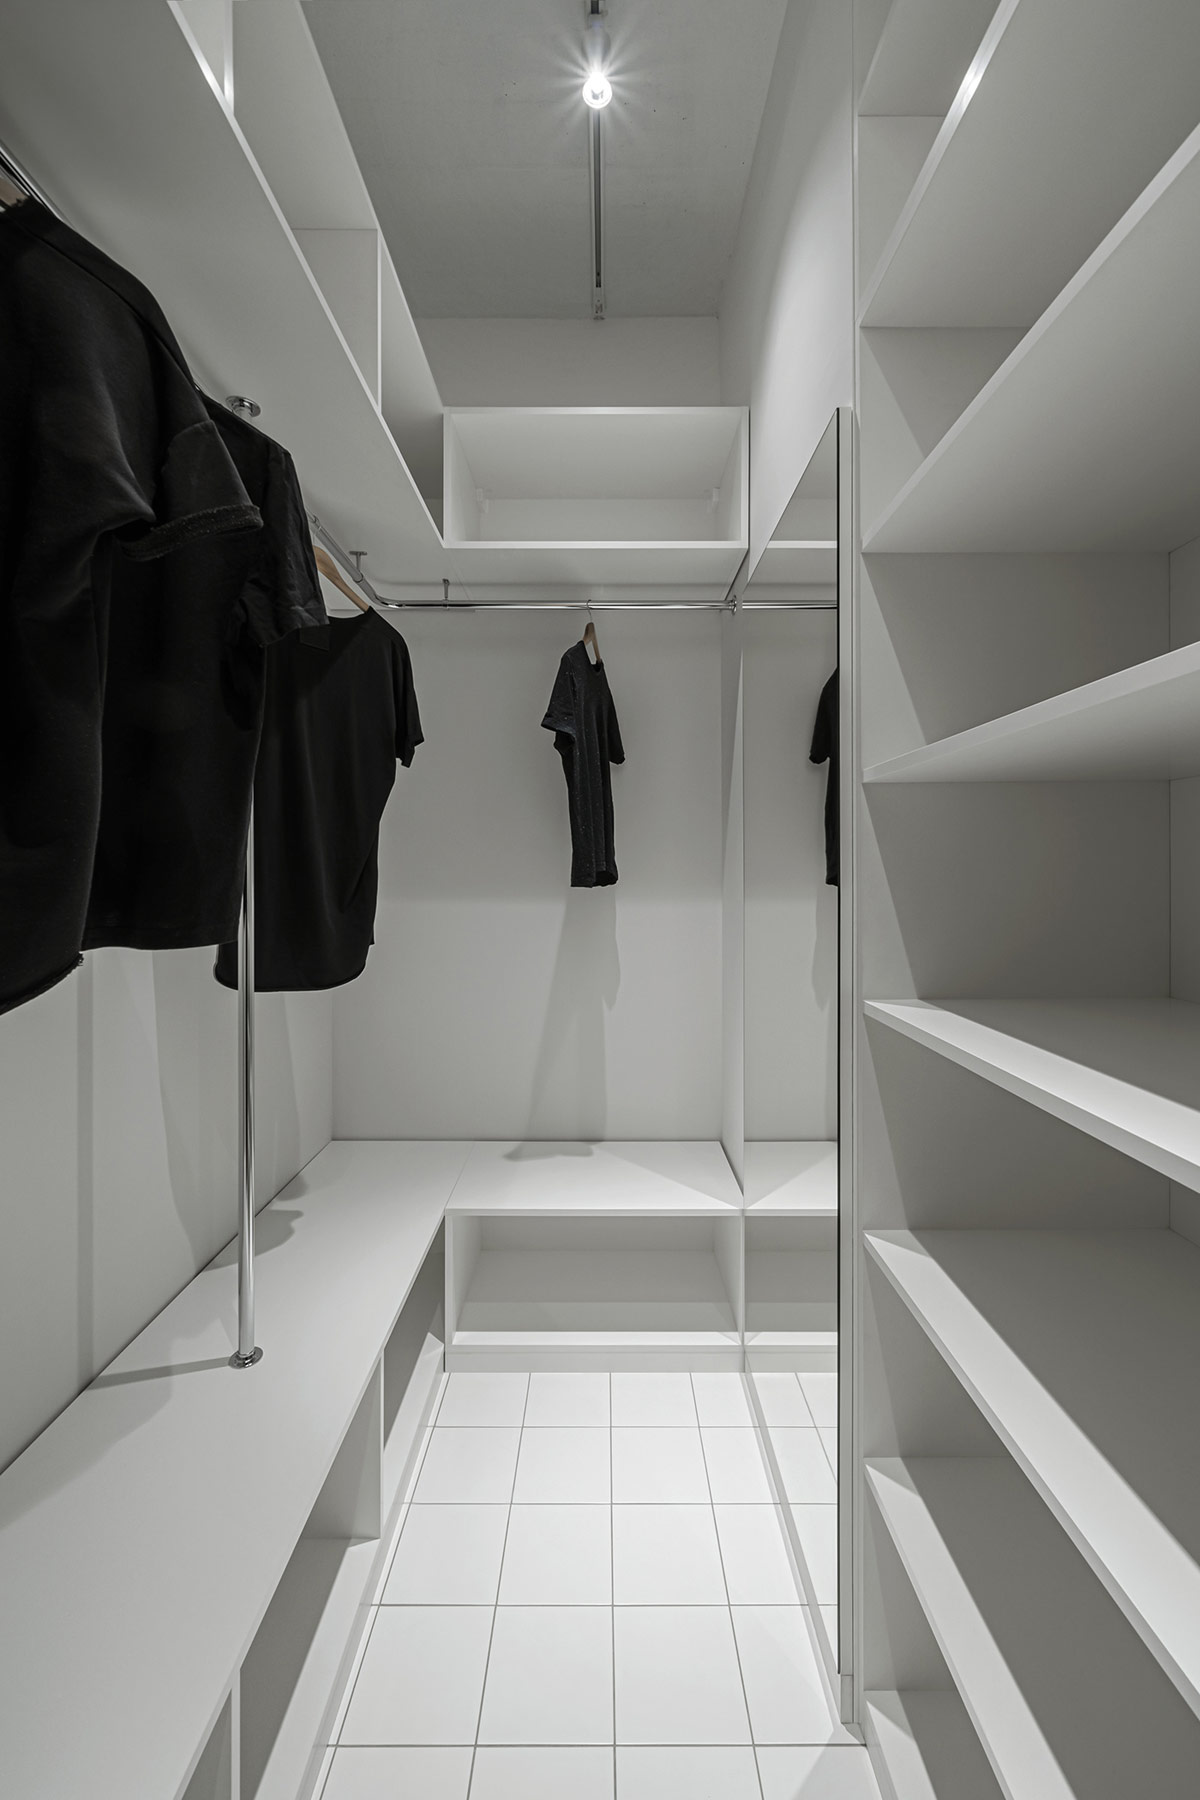 hình ảnh bên trong tủ quần áo với các ngăn kệ lưu trữ màu trắng của căn hộ nhỏ